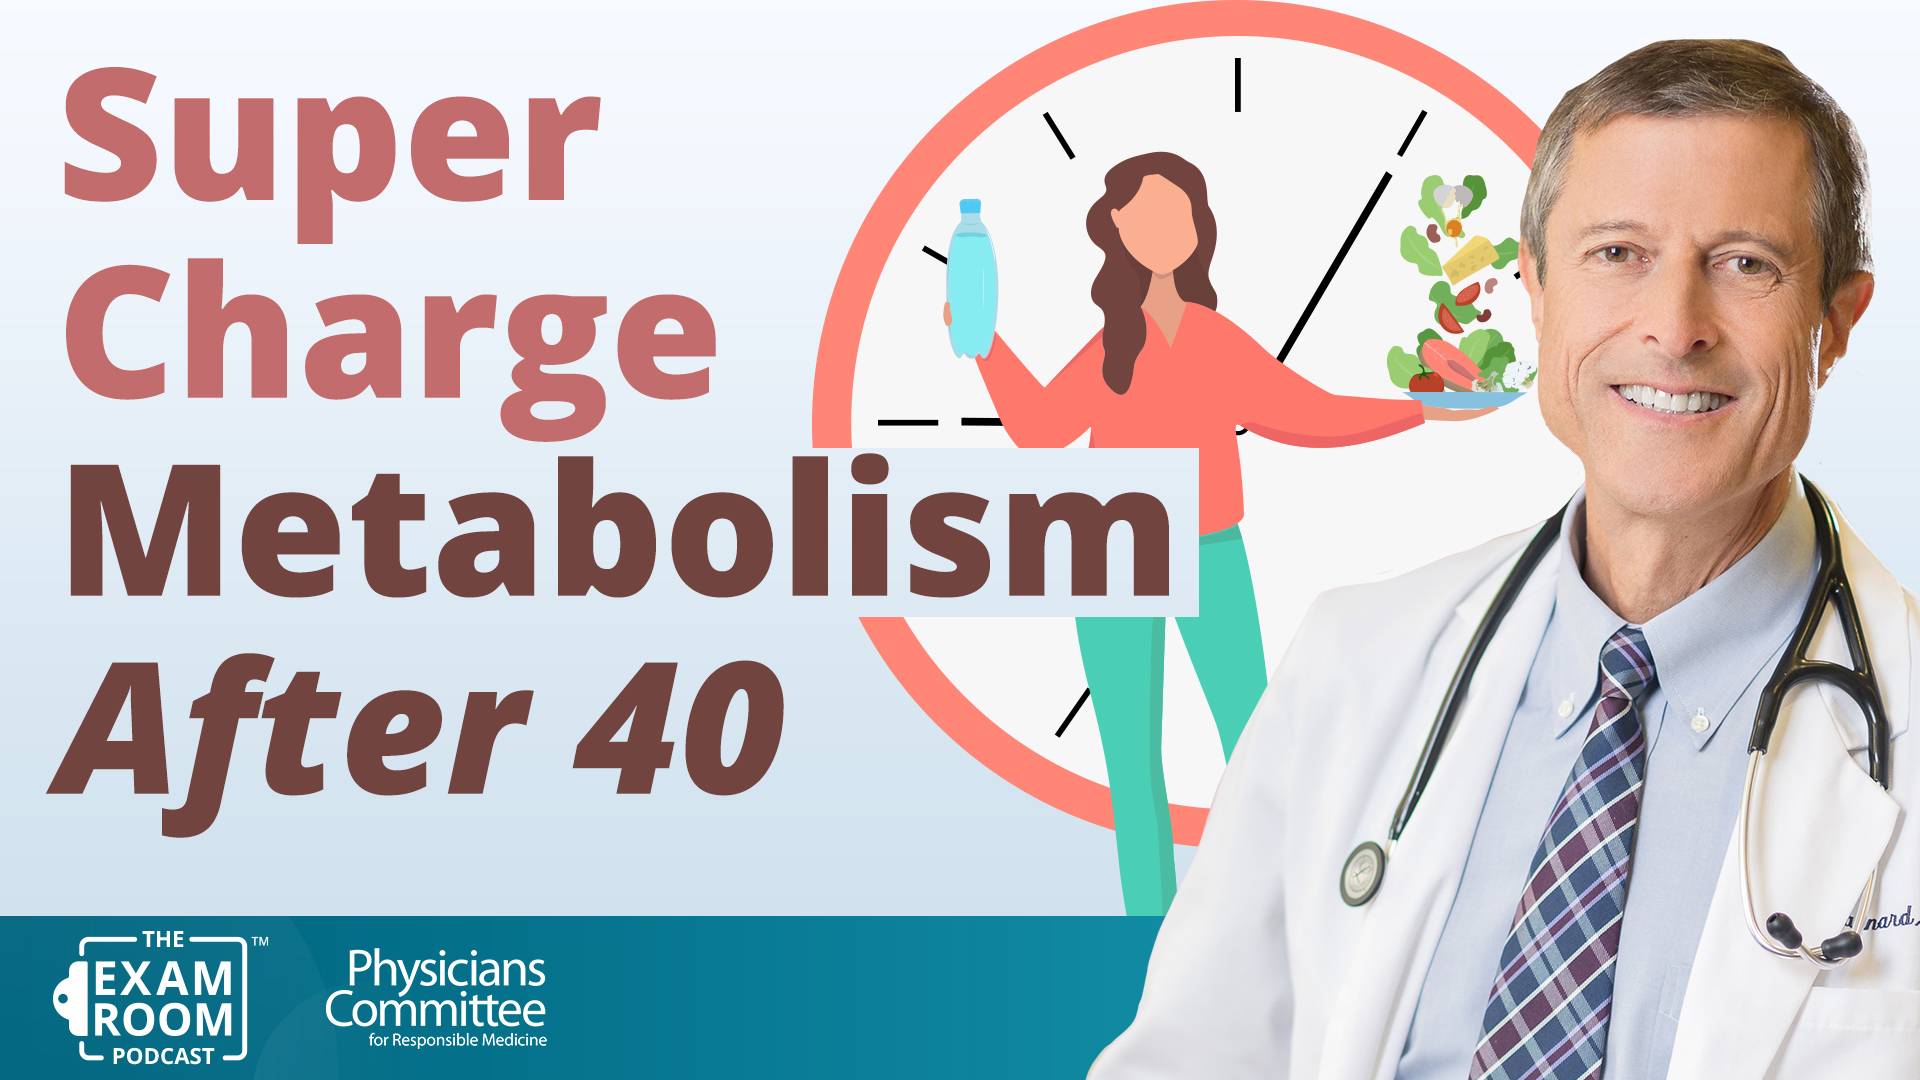 Speeding Up Metabolism After 40 | Dr. Neal Barnard Live Q&A